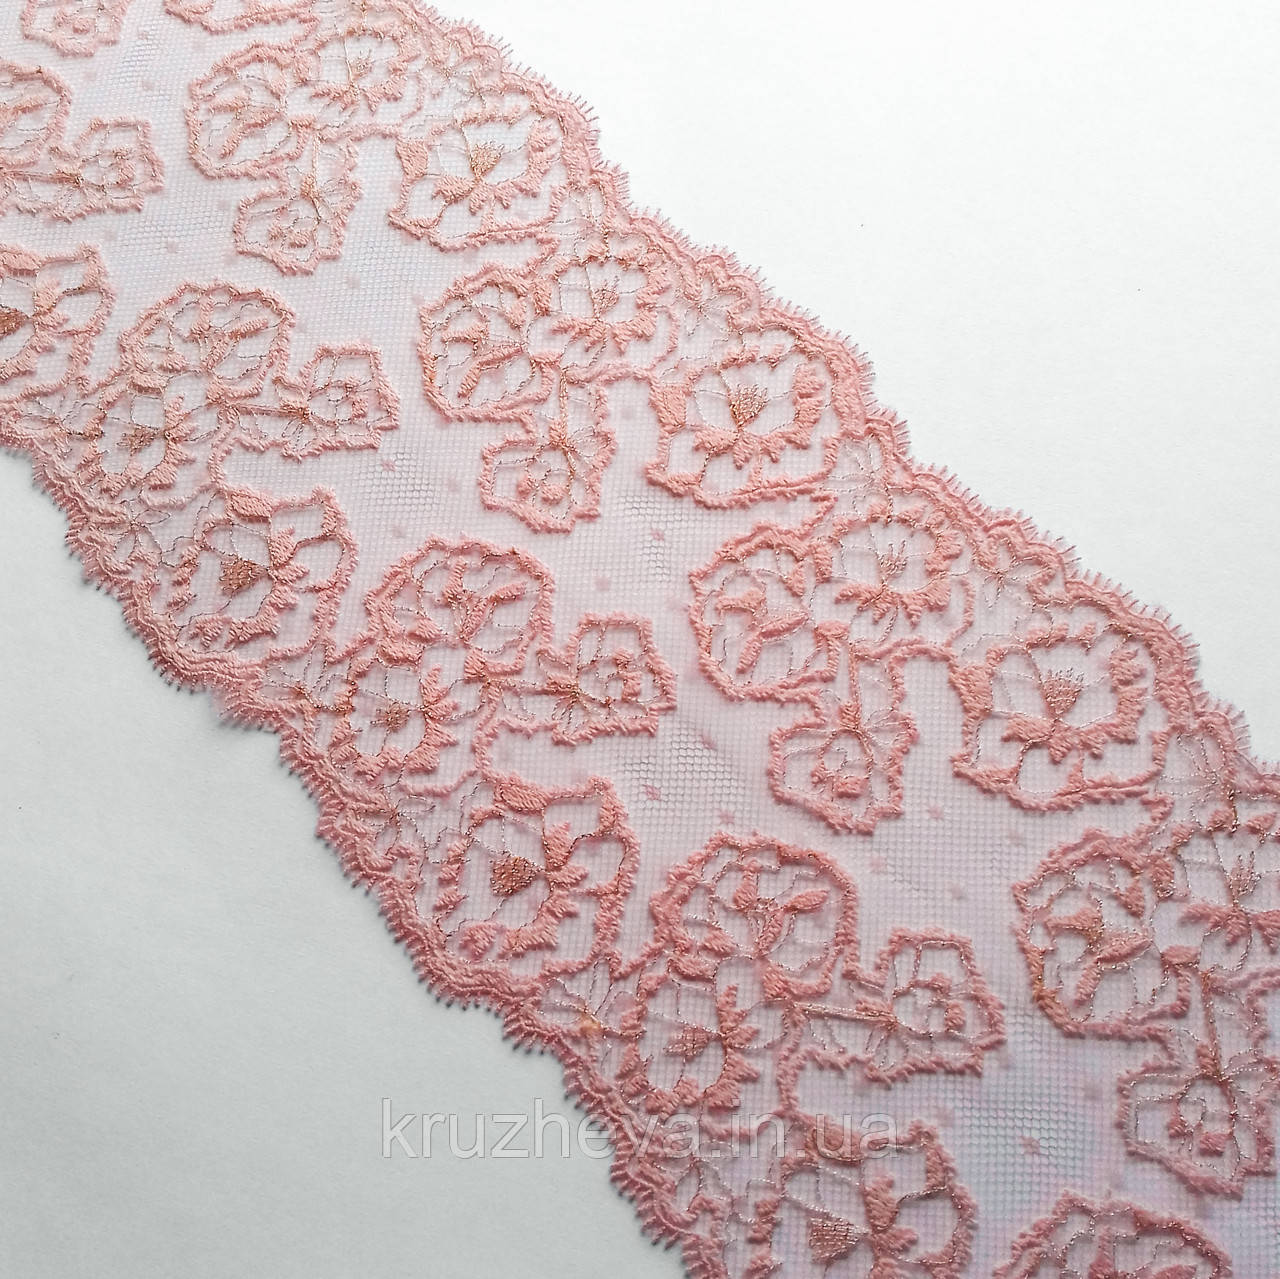 Ажурне мереживо вишивка на сітці: рожева та золотиста нитка по сітці персикового кольору, шир.18 см